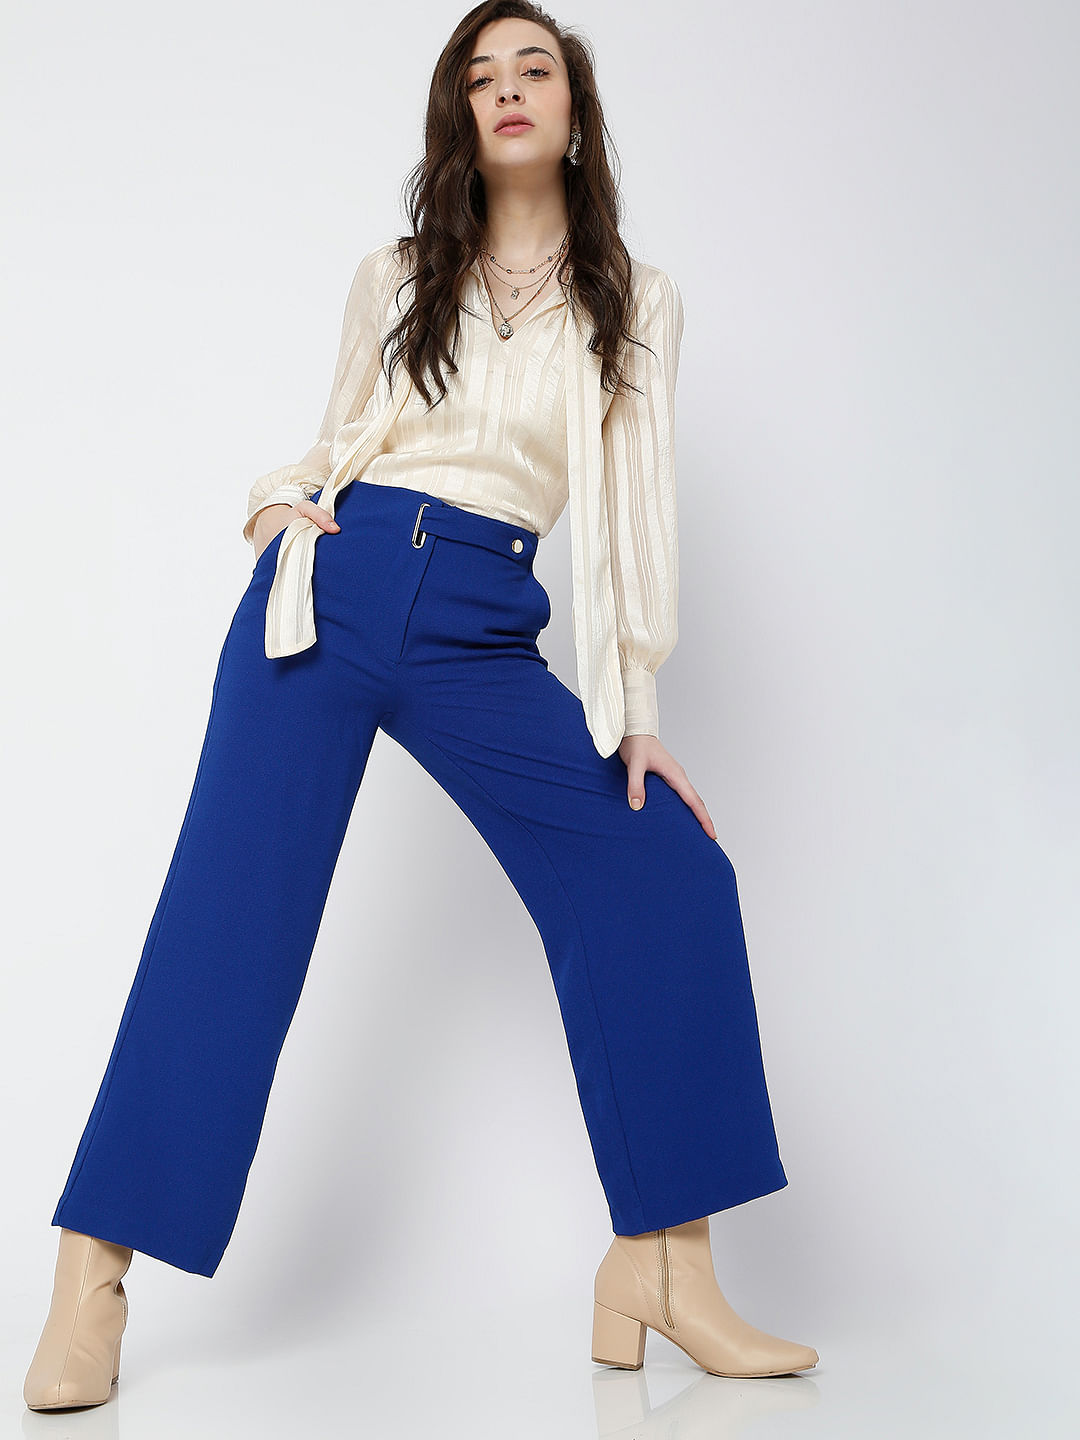 Buy Blue Trousers  Pants for Women by Styli Online  Ajiocom